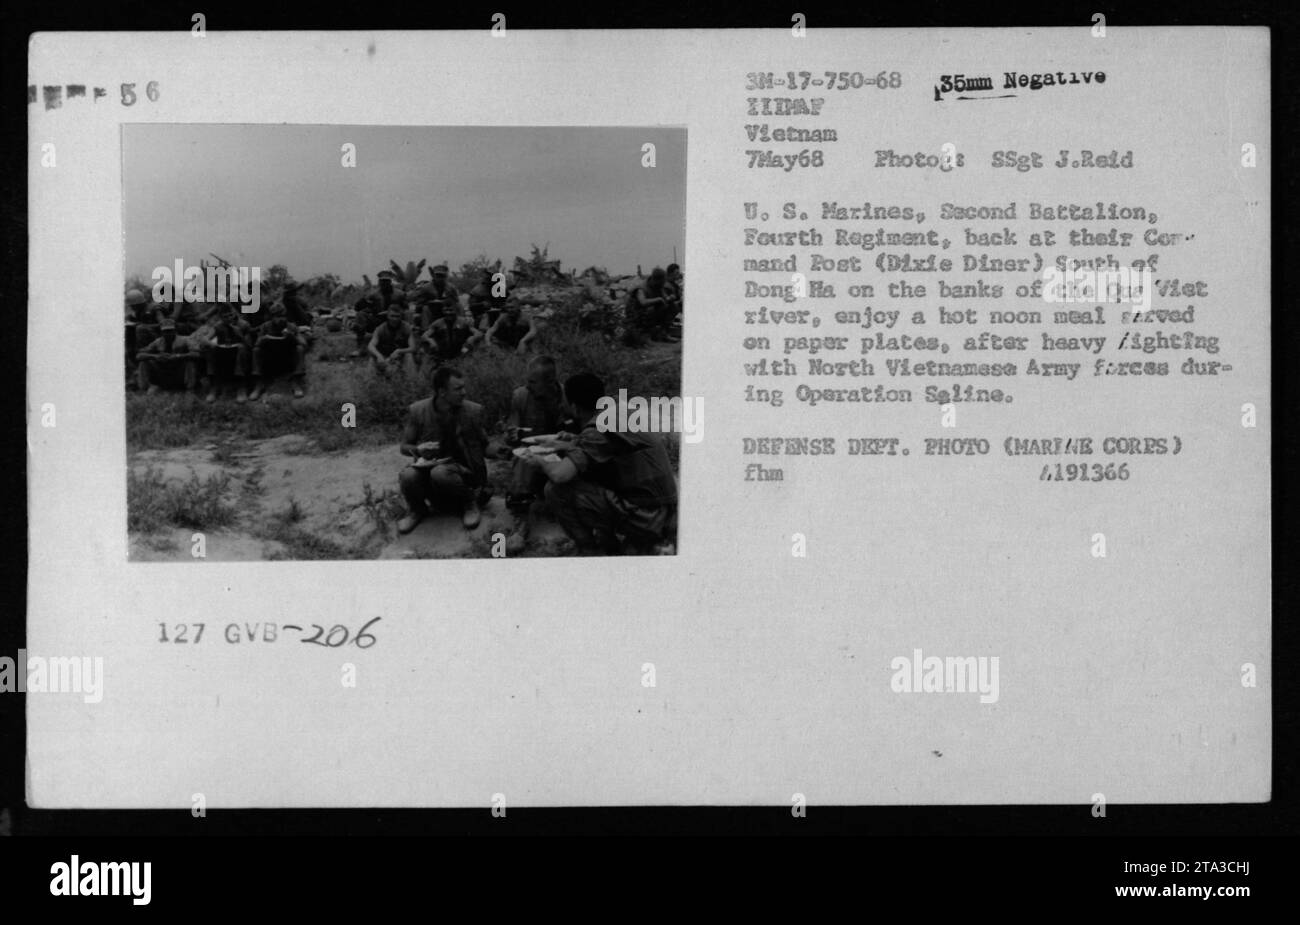 Die US-Marines des Zweiten Bataillons, des Vierten Regiments, werden am 7. Mai 1968 bei einem Mittagessen auf ihrem Kommandoposten (Dixie Diner) beobachtet. Das Foto zeigt, wie sie eine warme Mittagsmahlzeit auf Papiertellern essen. Die Marines hatten sich vor kurzem in intensiven Kämpfen mit nordvietnamesischen Armeeeinheiten während der Operation Saline entlang des Flusses Que Viet in der Nähe von Dong Ha eingesetzt. Das Foto wurde von SSgt J. Reid aufgenommen. Stockfoto